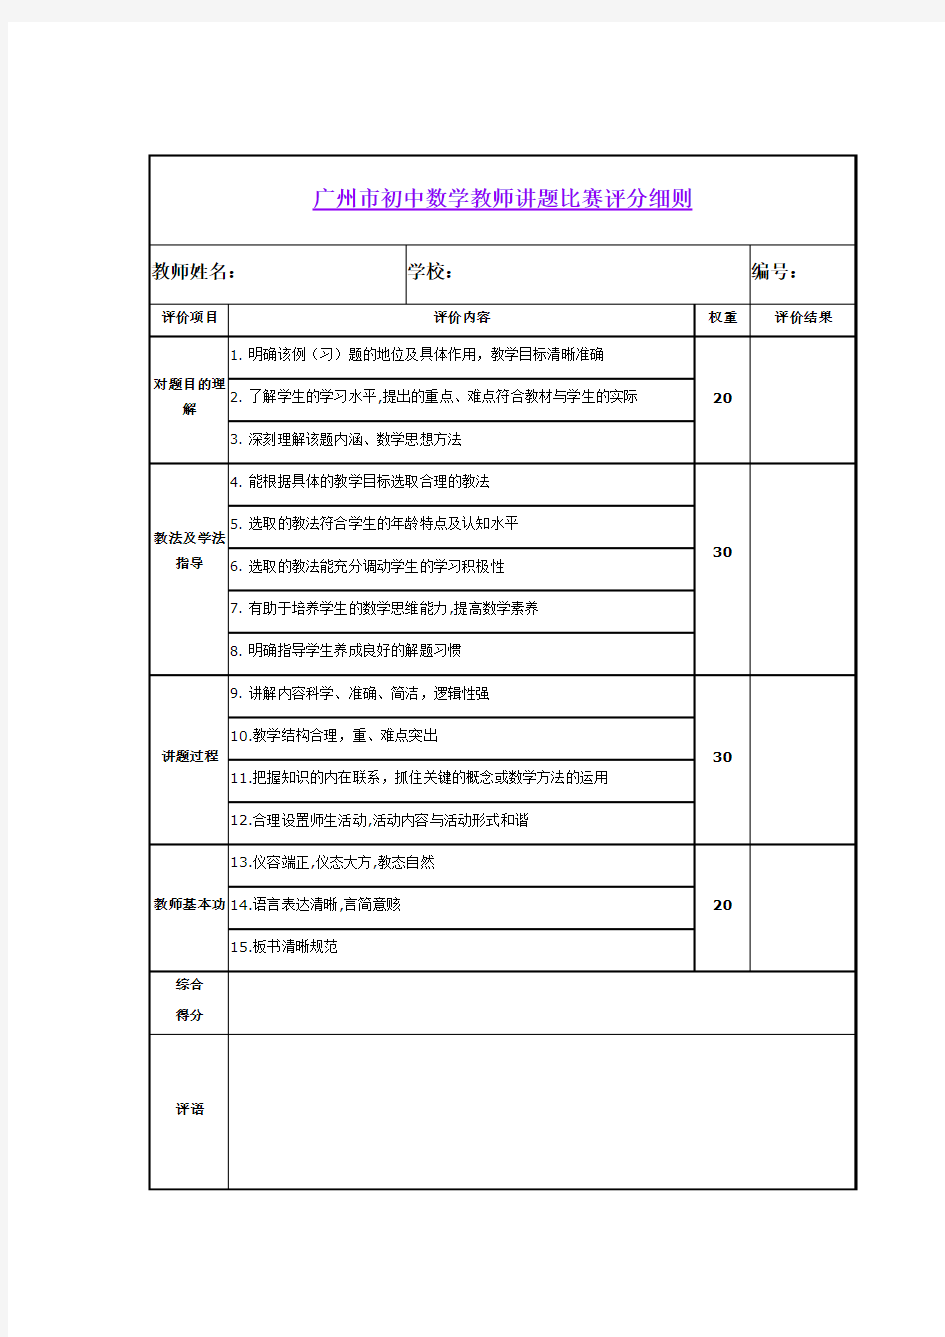 广州市初中数学教师讲题比赛评分细则